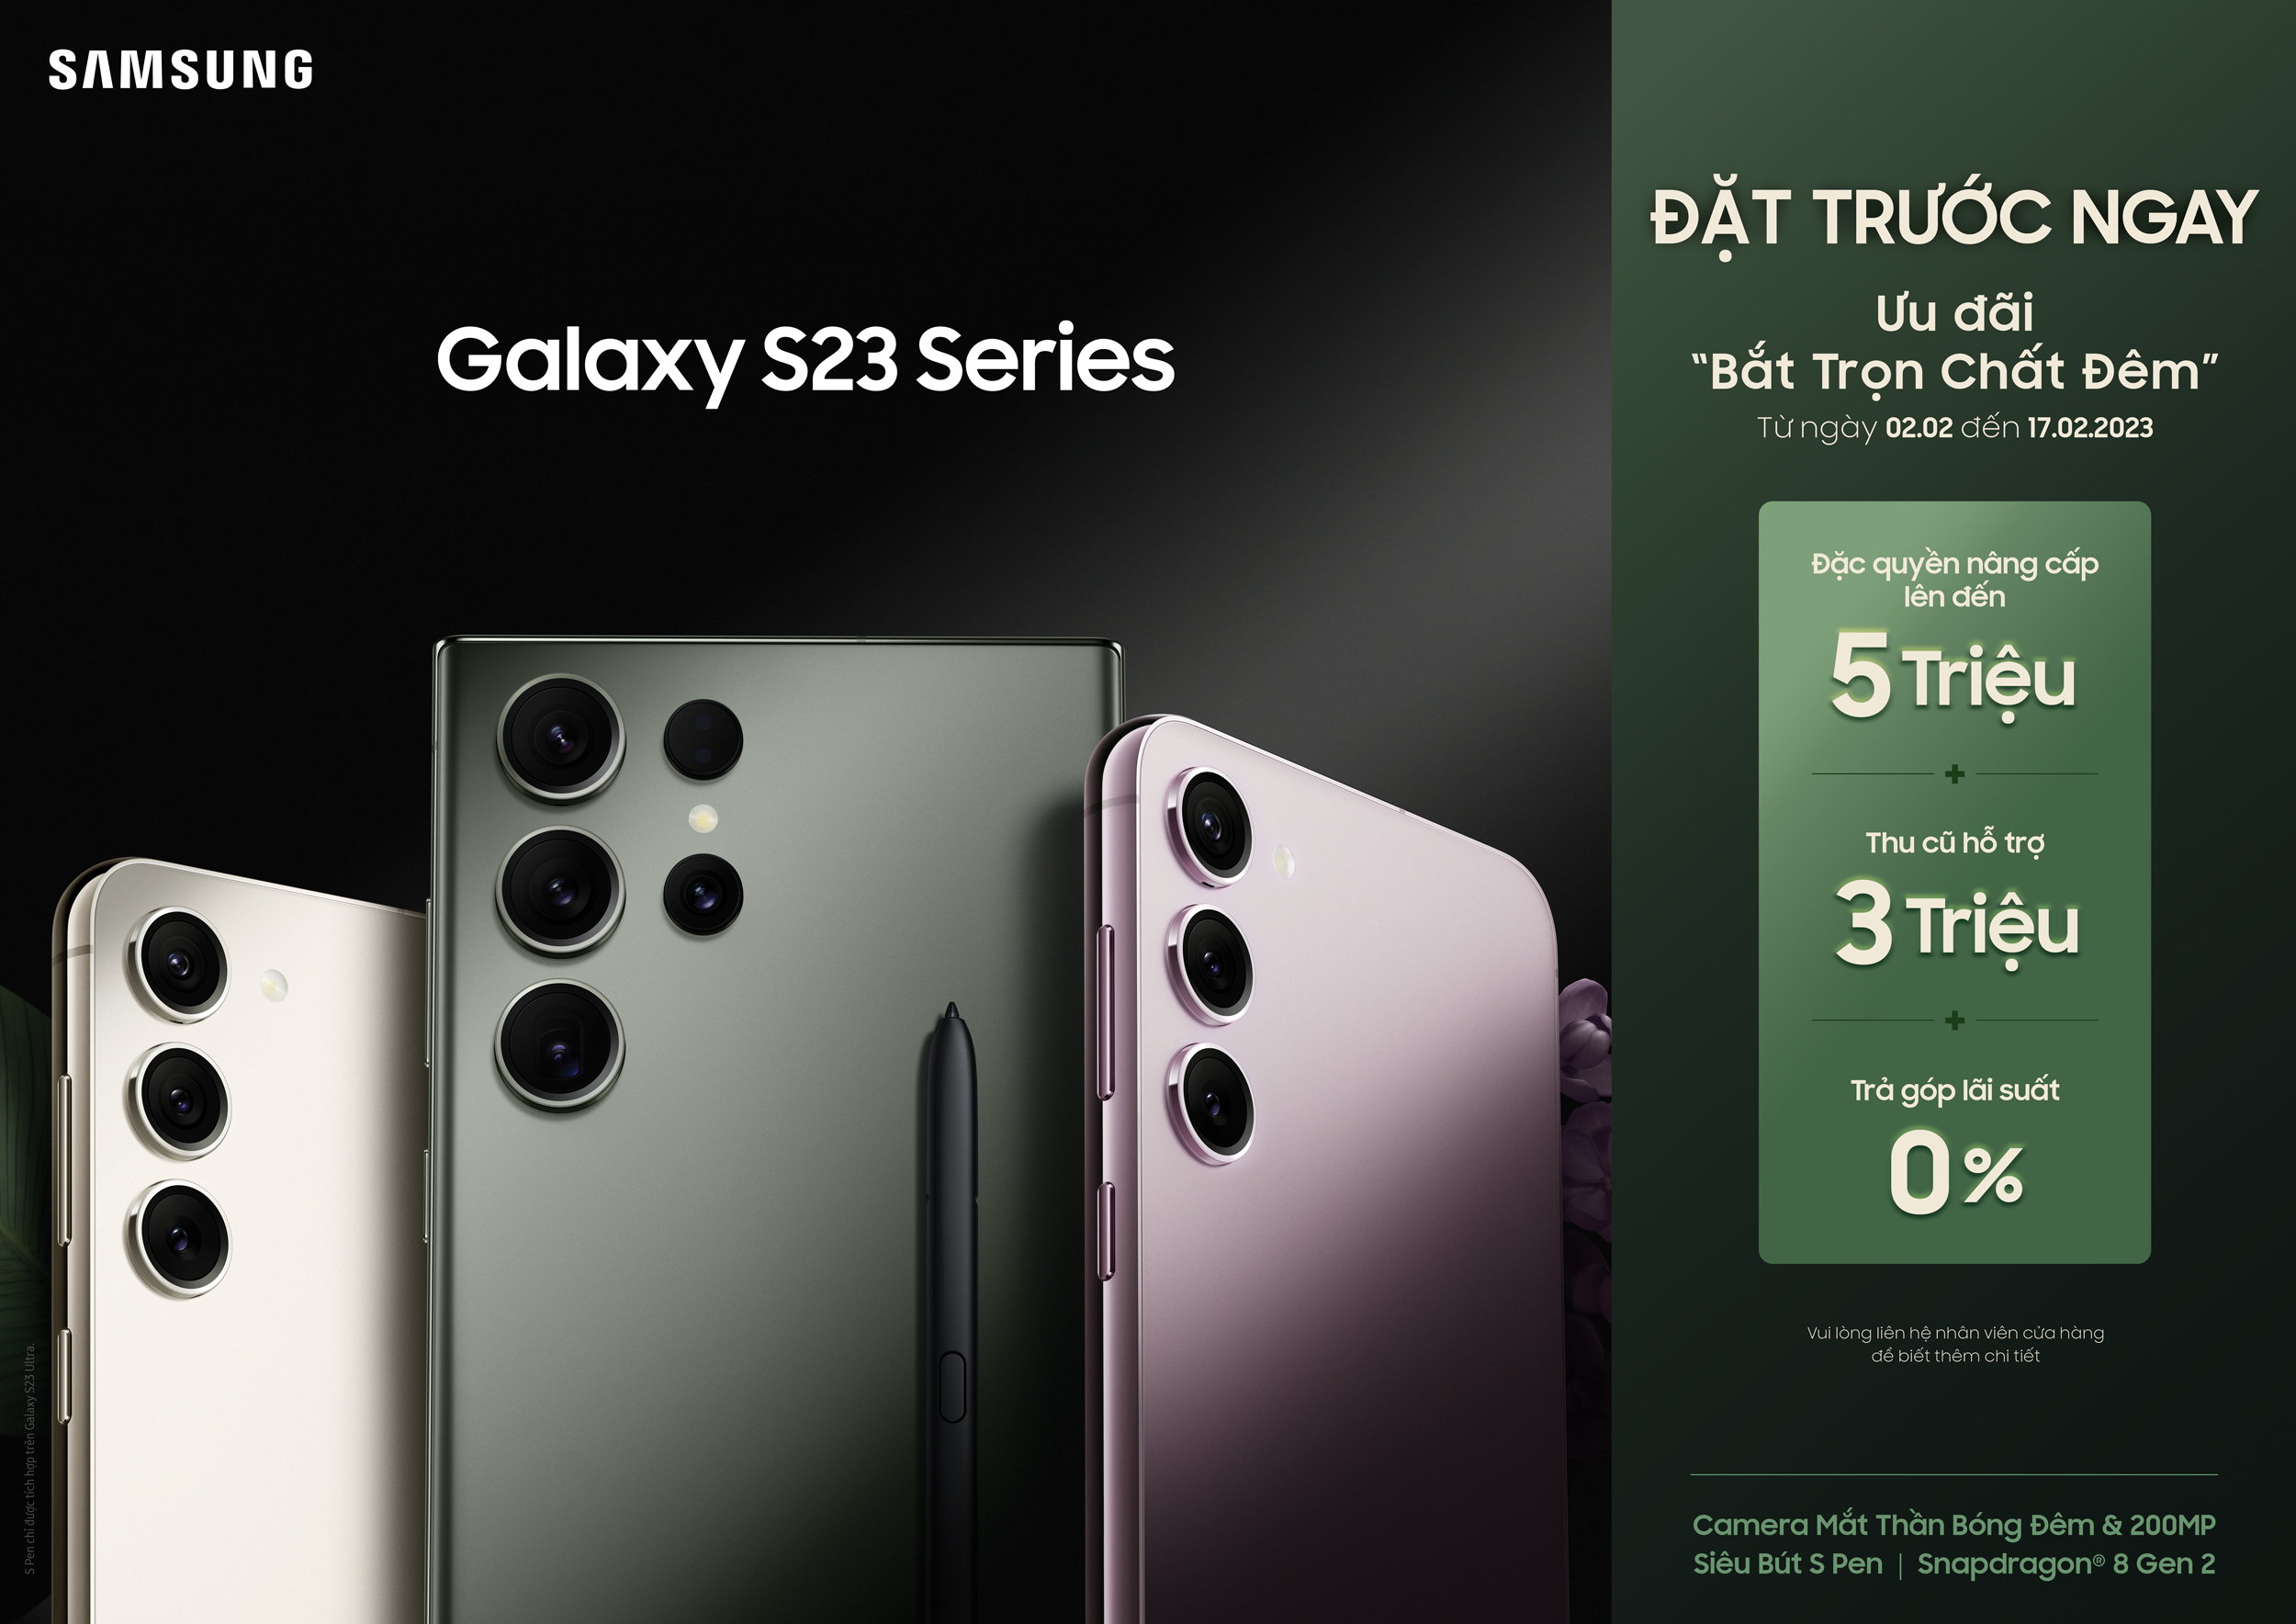 Trên tay nhanh Galaxy S23 series: Nâng cấp hiệu năng và camera AI mạnh mẽ, thiết kế hoàn thiện hơn